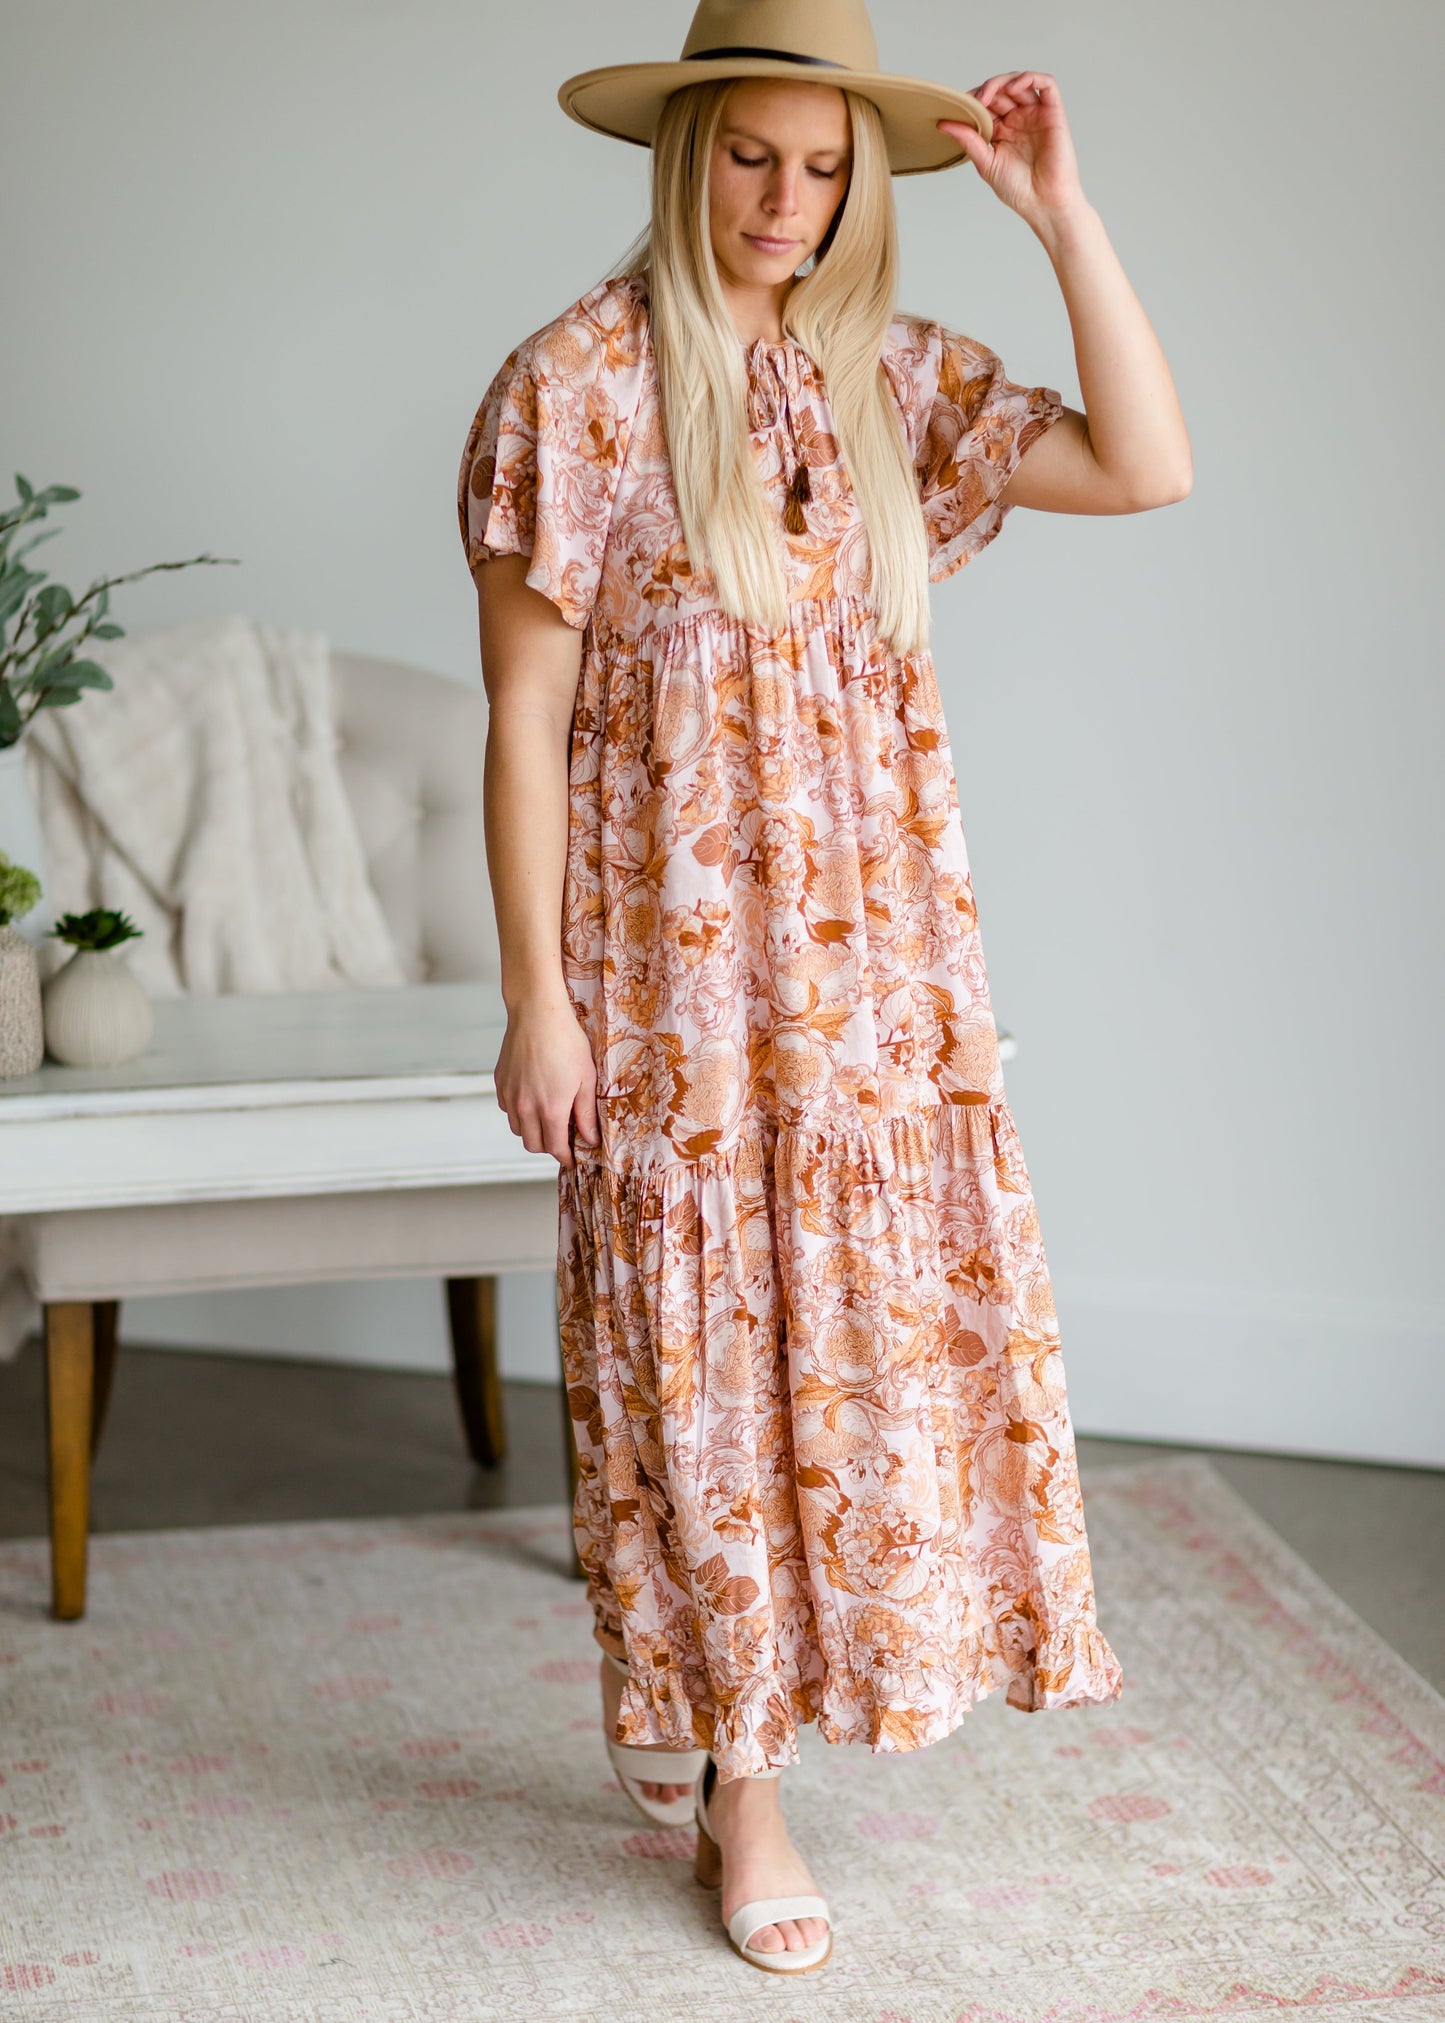 Blush Floral Tassel-Tie Maxi Dress - FINAL SALE Dresses